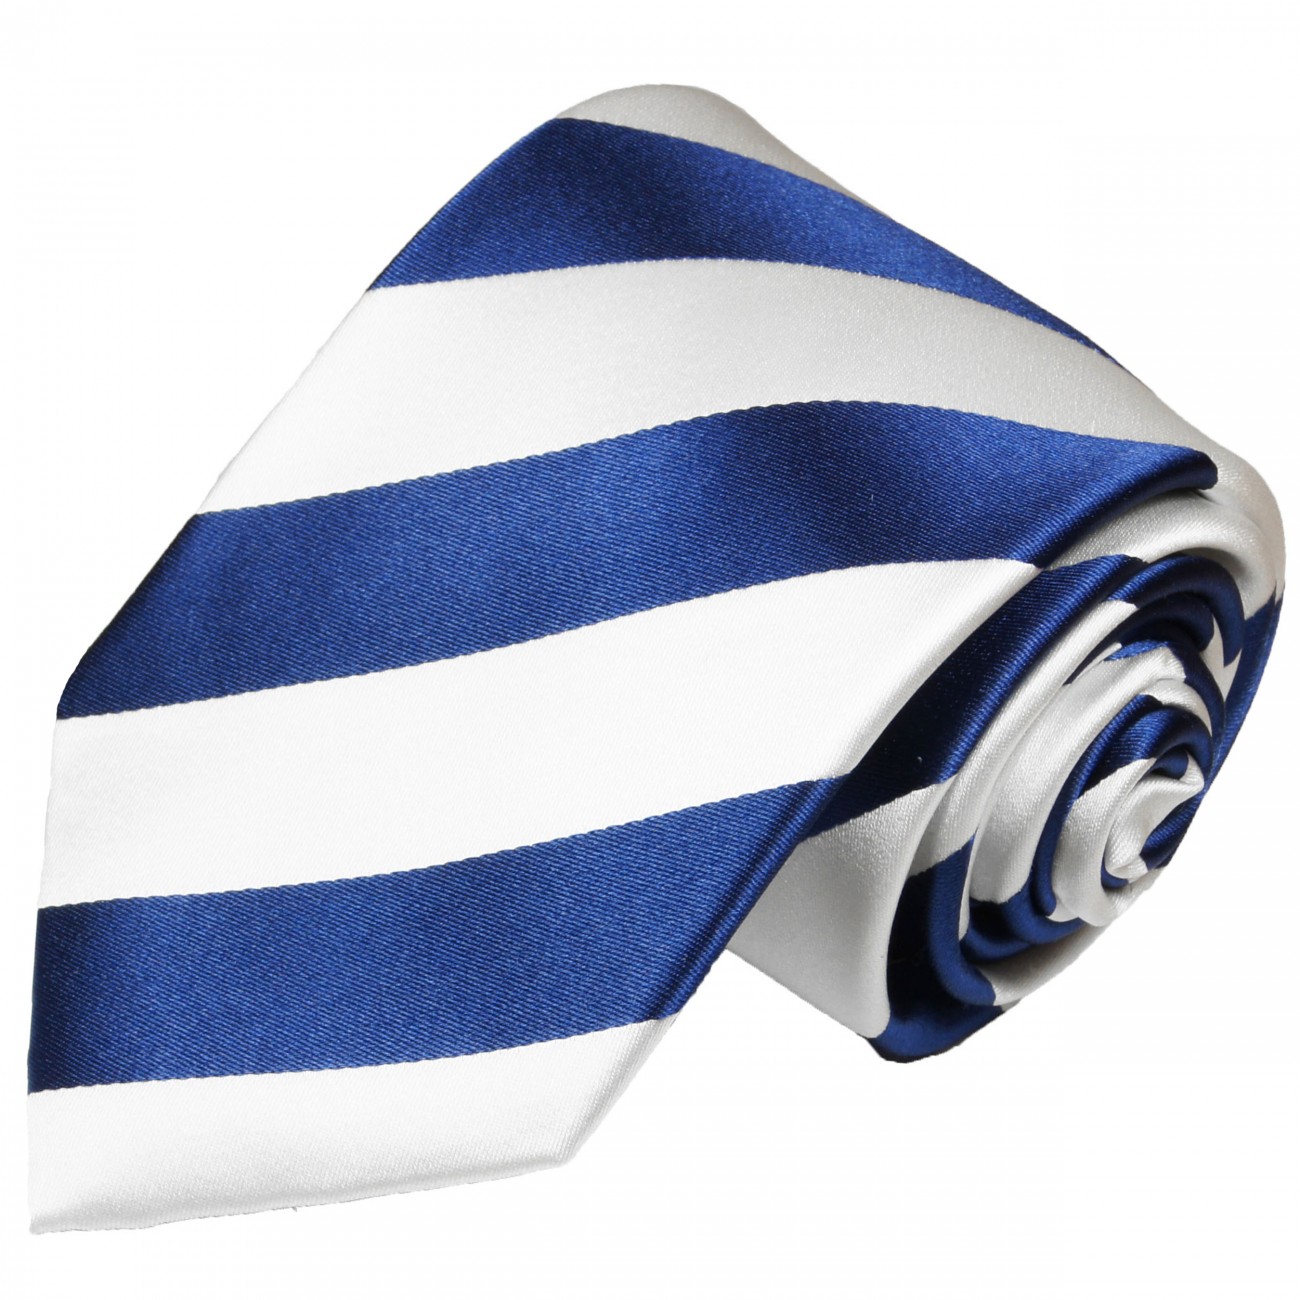 Manschettenknöpfe 405 Einstecktuch Paul Malone Krawatte weiß blau Seide 